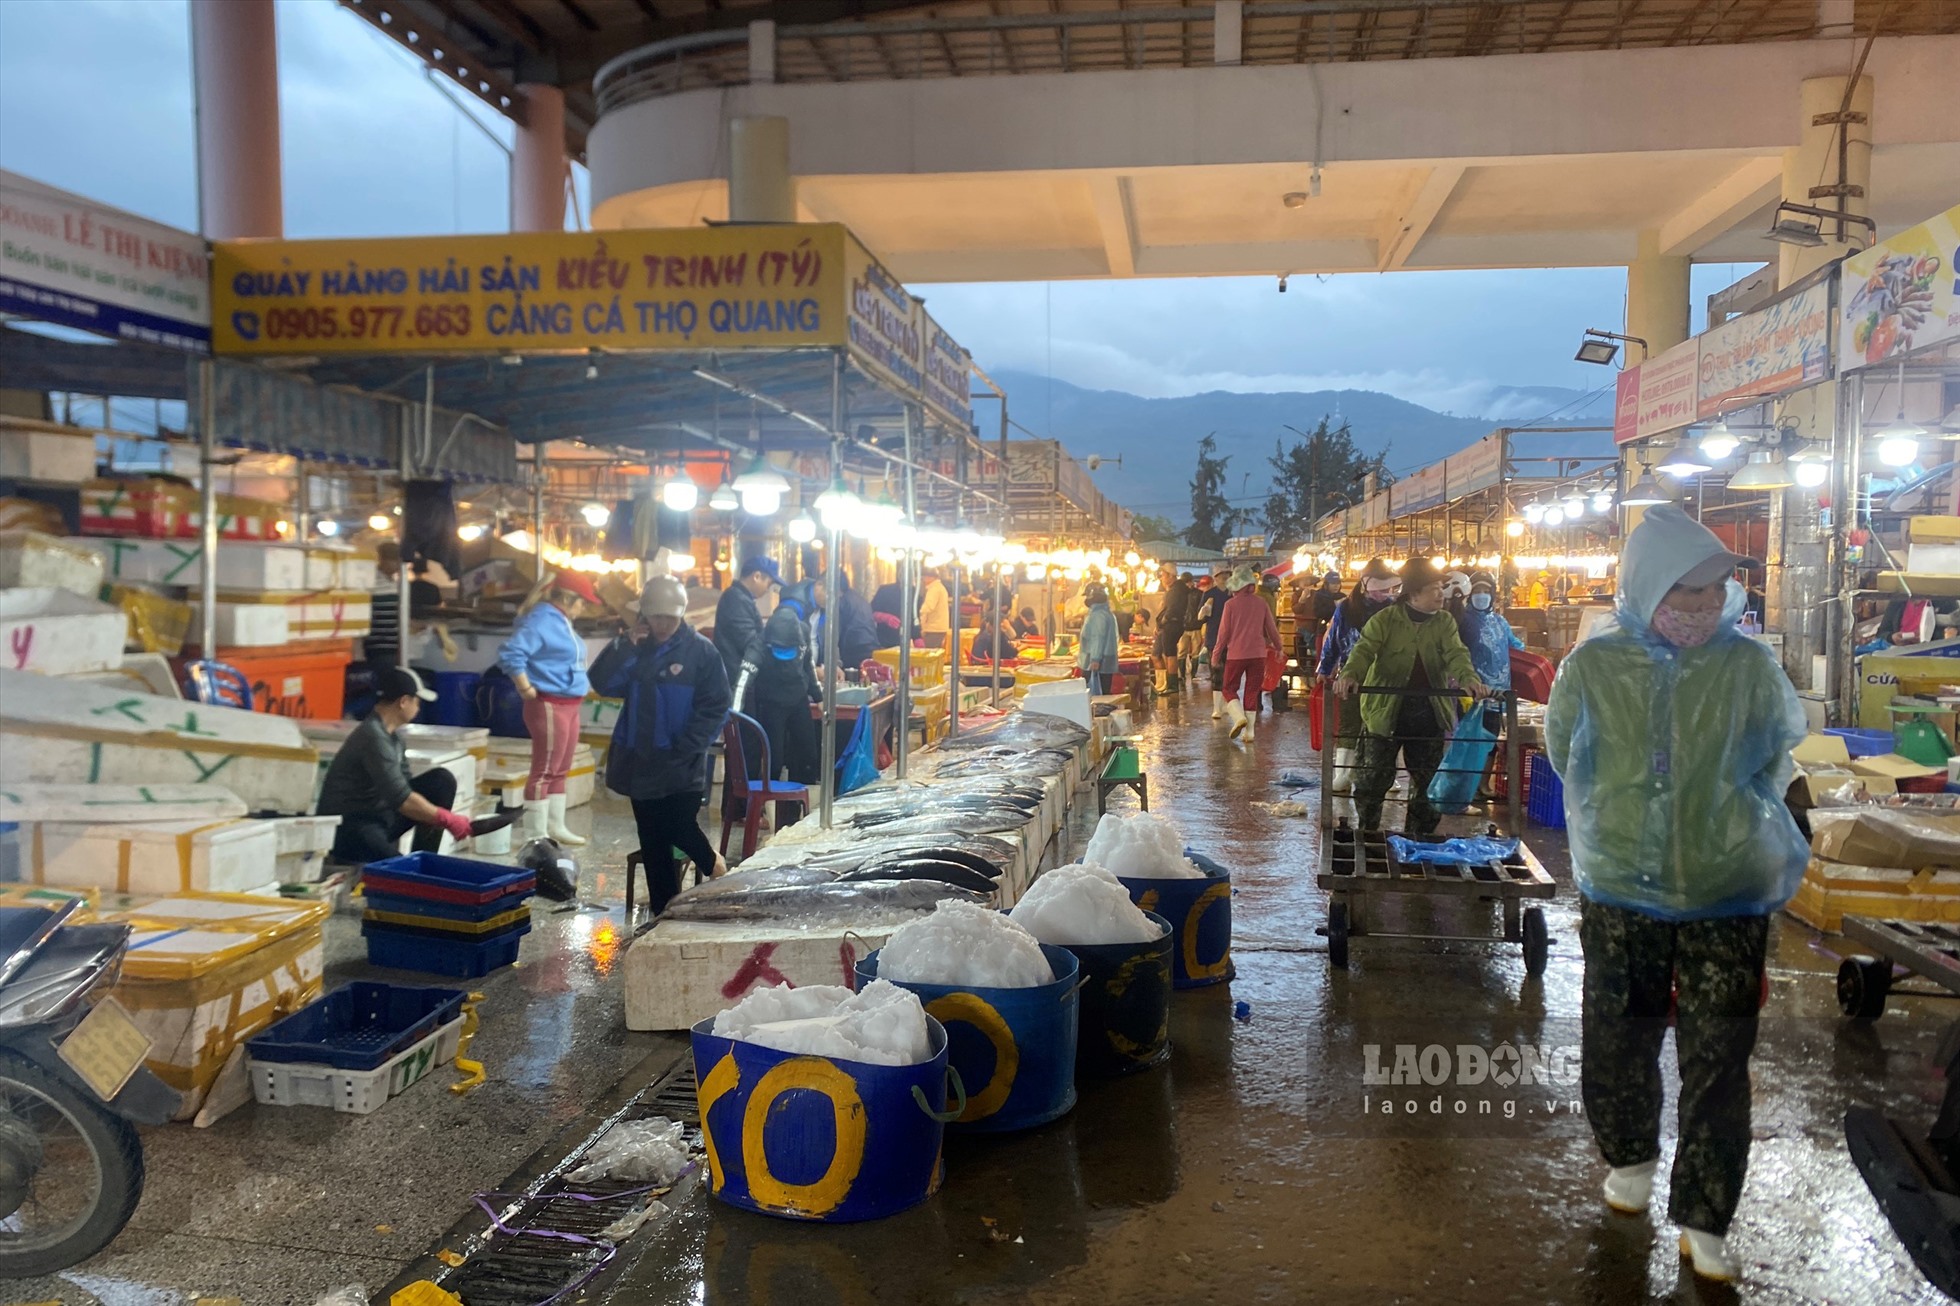 Gần 5 giờ sáng, lượng người đến cảng cá Thọ Quang vẫn khá vắng vẻ, mặc dù mọi ngày, đây là thời gian nhiều thương lái đến mua sỉ hải sản để giao đi các chợ.